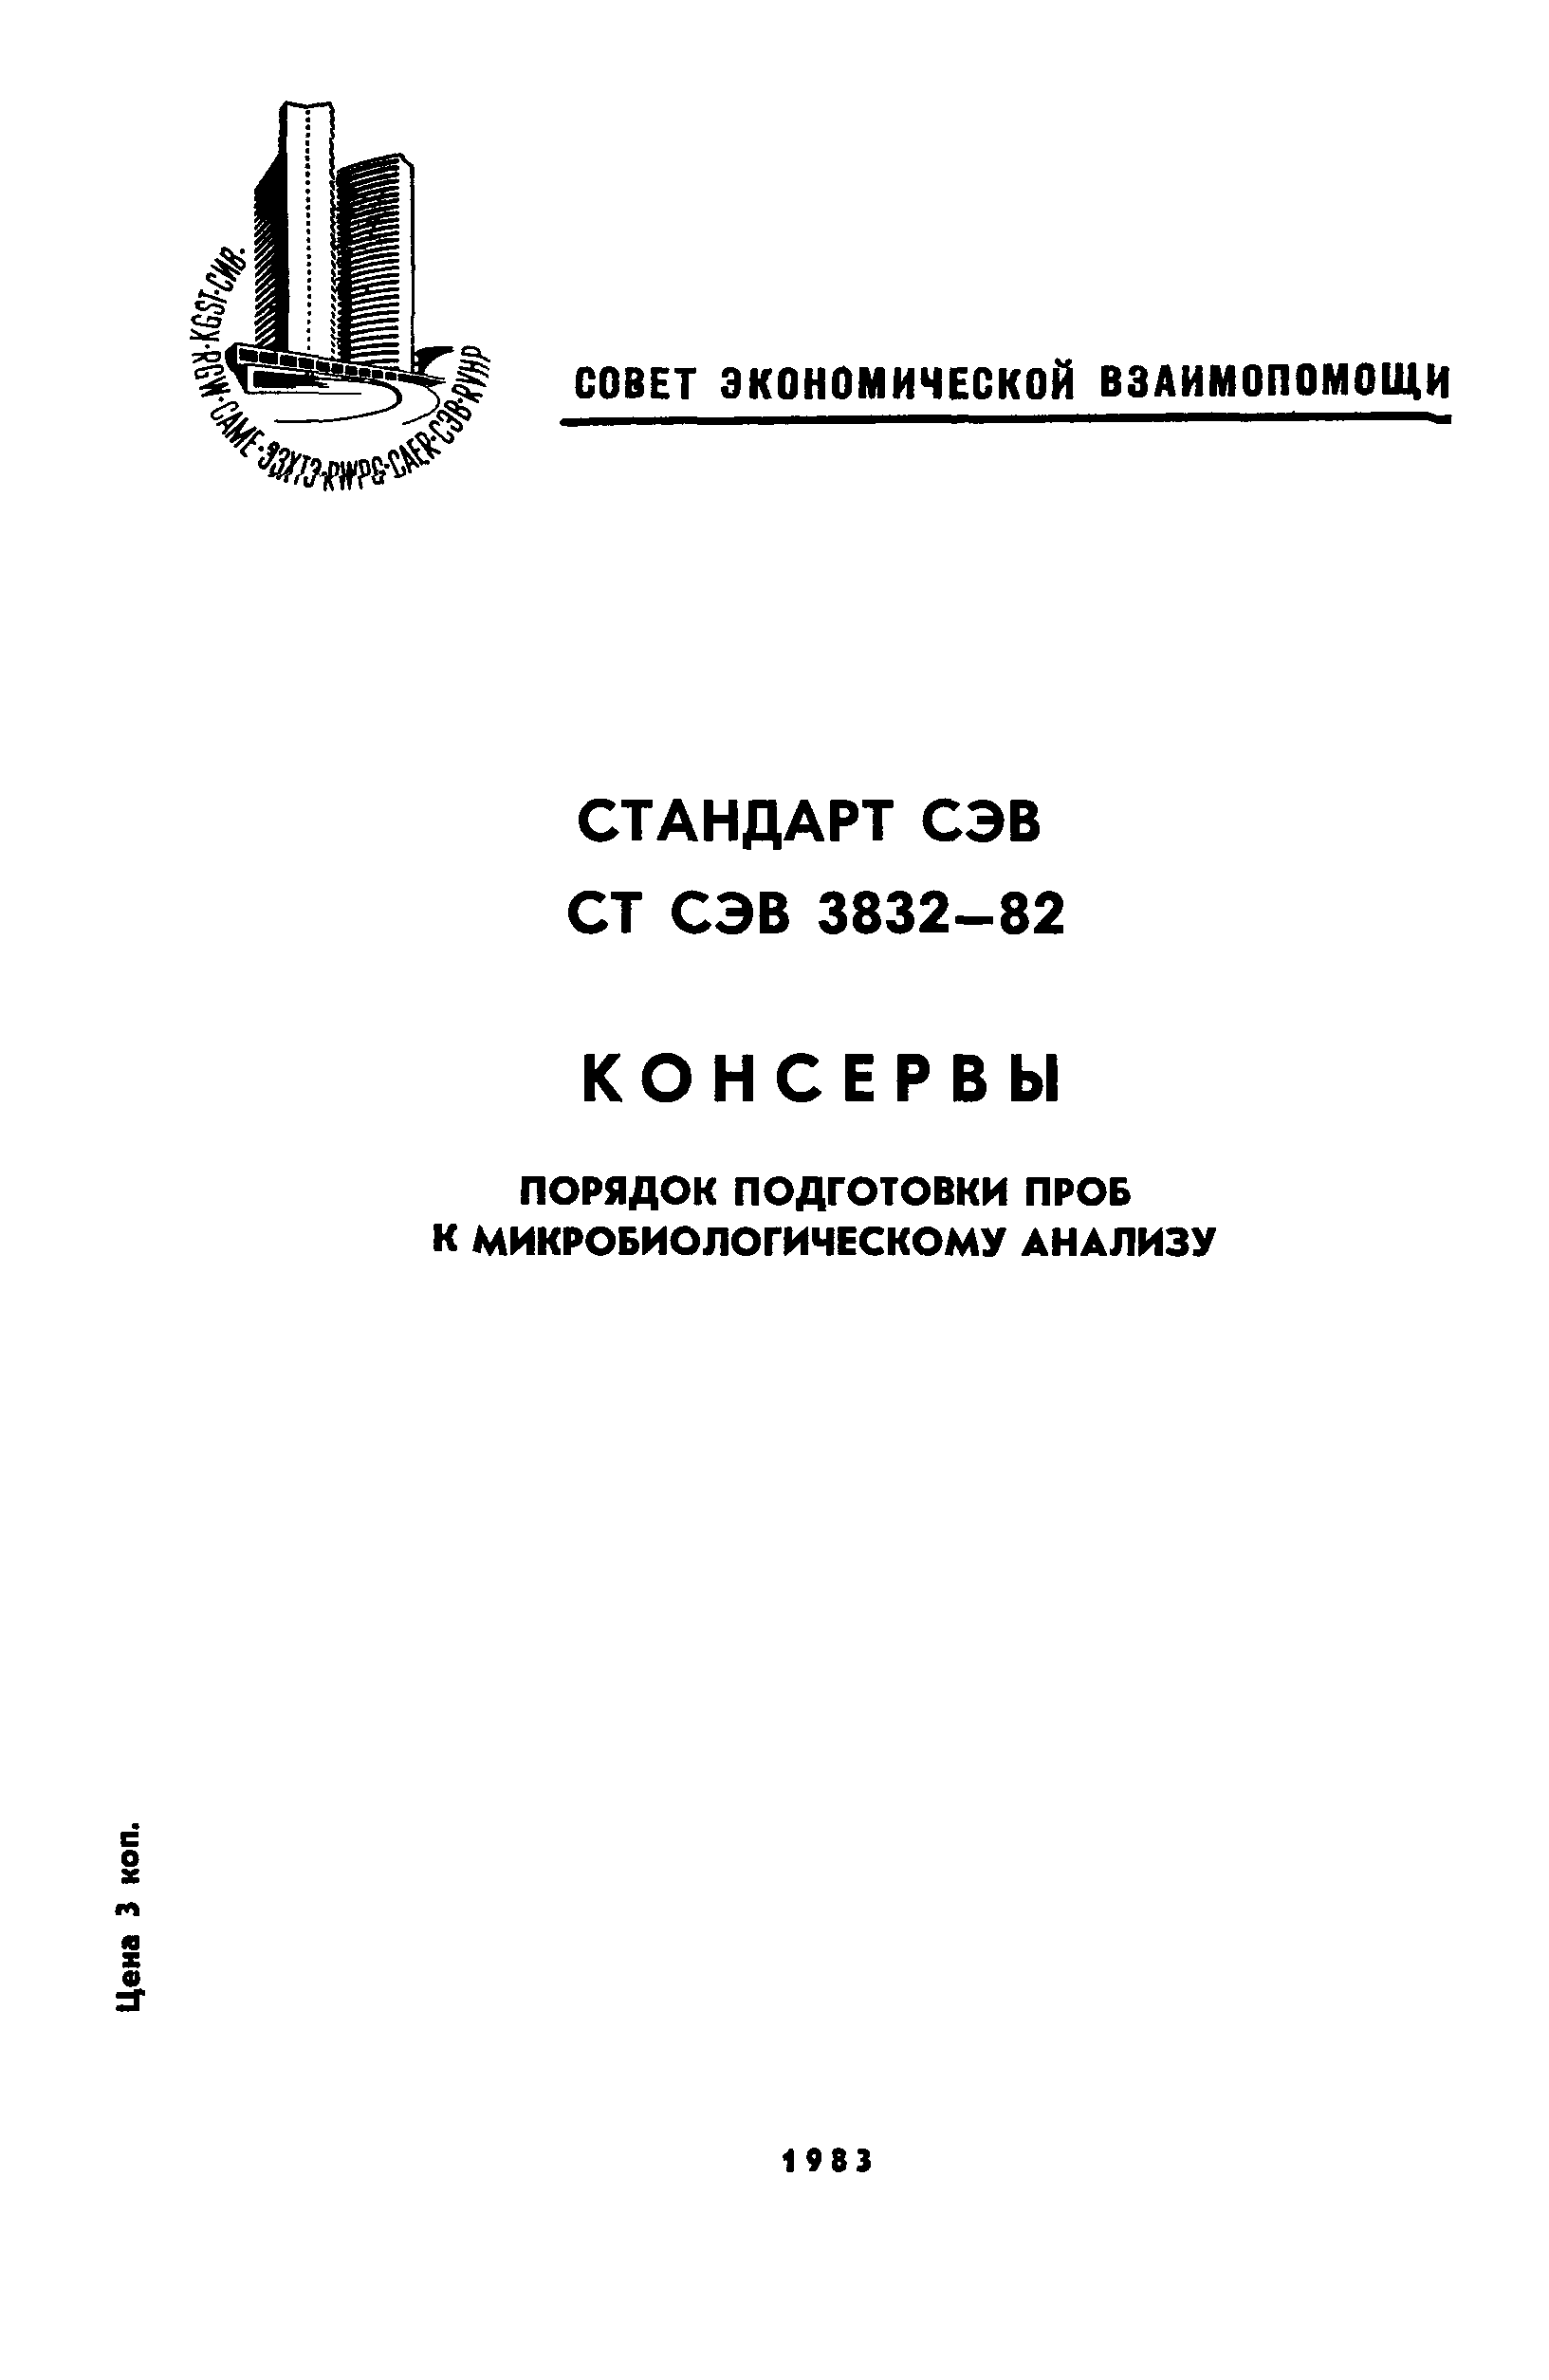 СТ СЭВ 3832-82